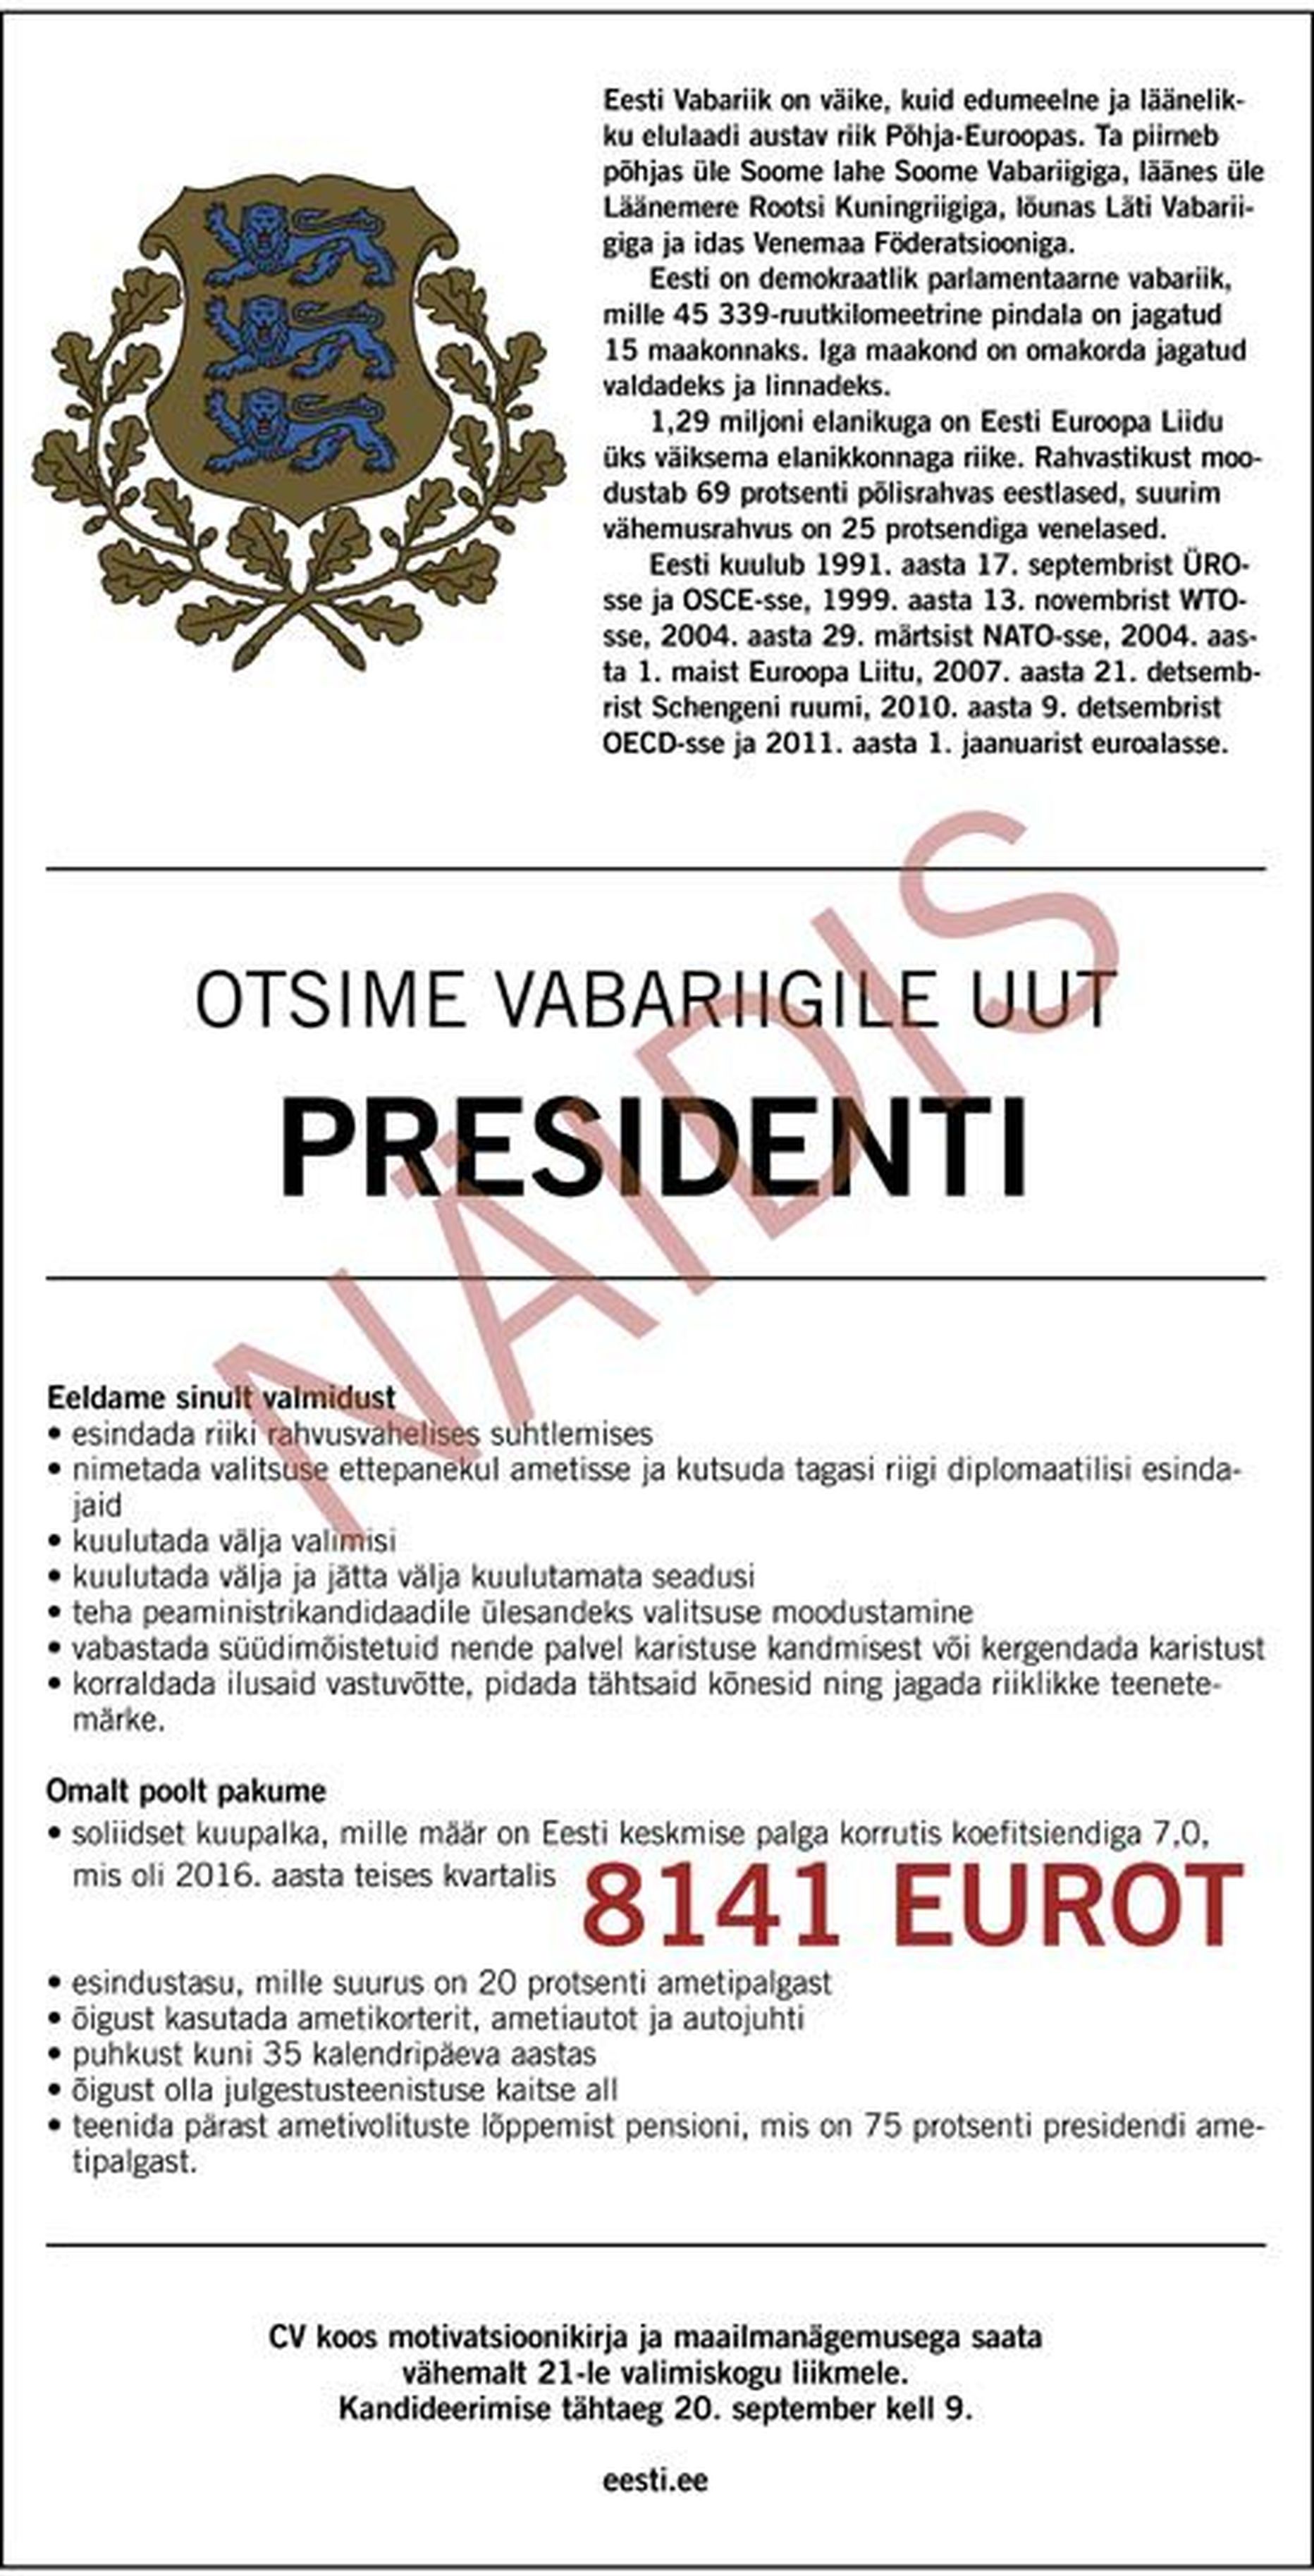 Kui Eesti riik otsiks endale uut presidenti töökuulutuse abil ning oleks valmis seejuures ausalt välja tooma värvatava ametipalga, siis võiks see välja näha umbes selline.